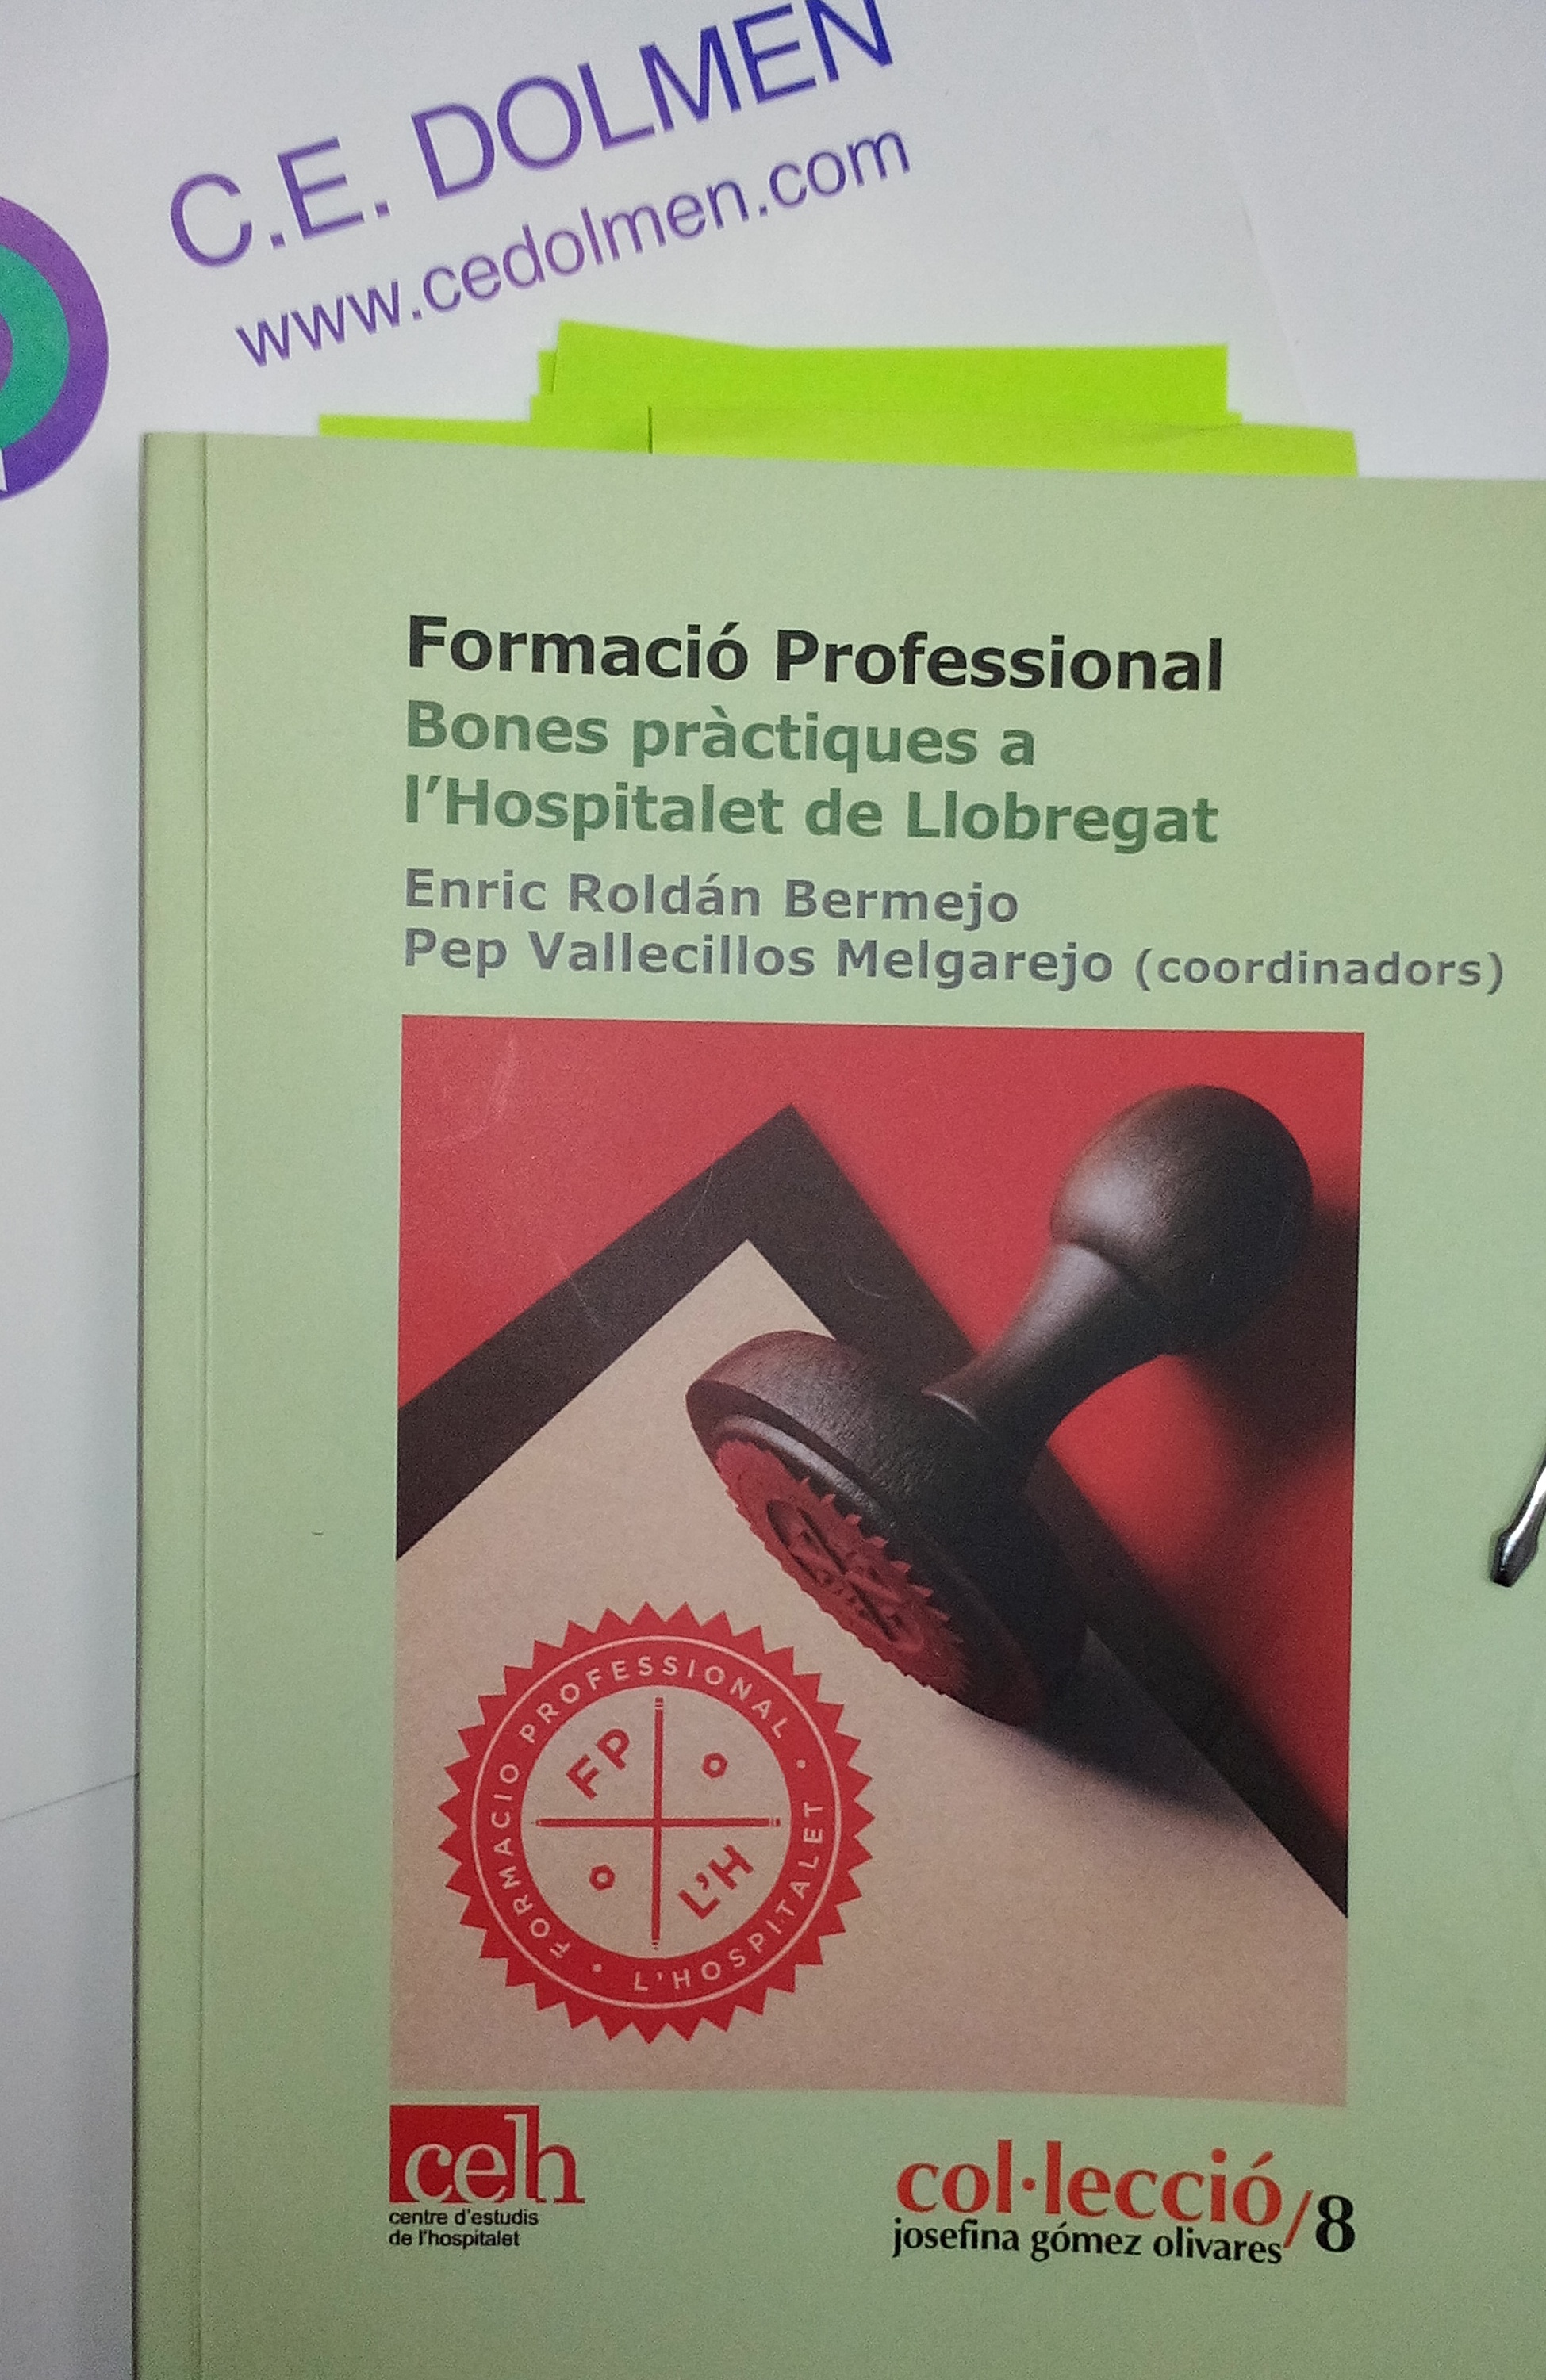 El llibre 'Formació Professional. Bones pràctiques a L'Hospitalet de Llobregat' recentment publicat pel Centre d'Estudis de L'Hospitalet incorpora interessants experiències del professorat i d'exalumnes de CE DOLMEN.